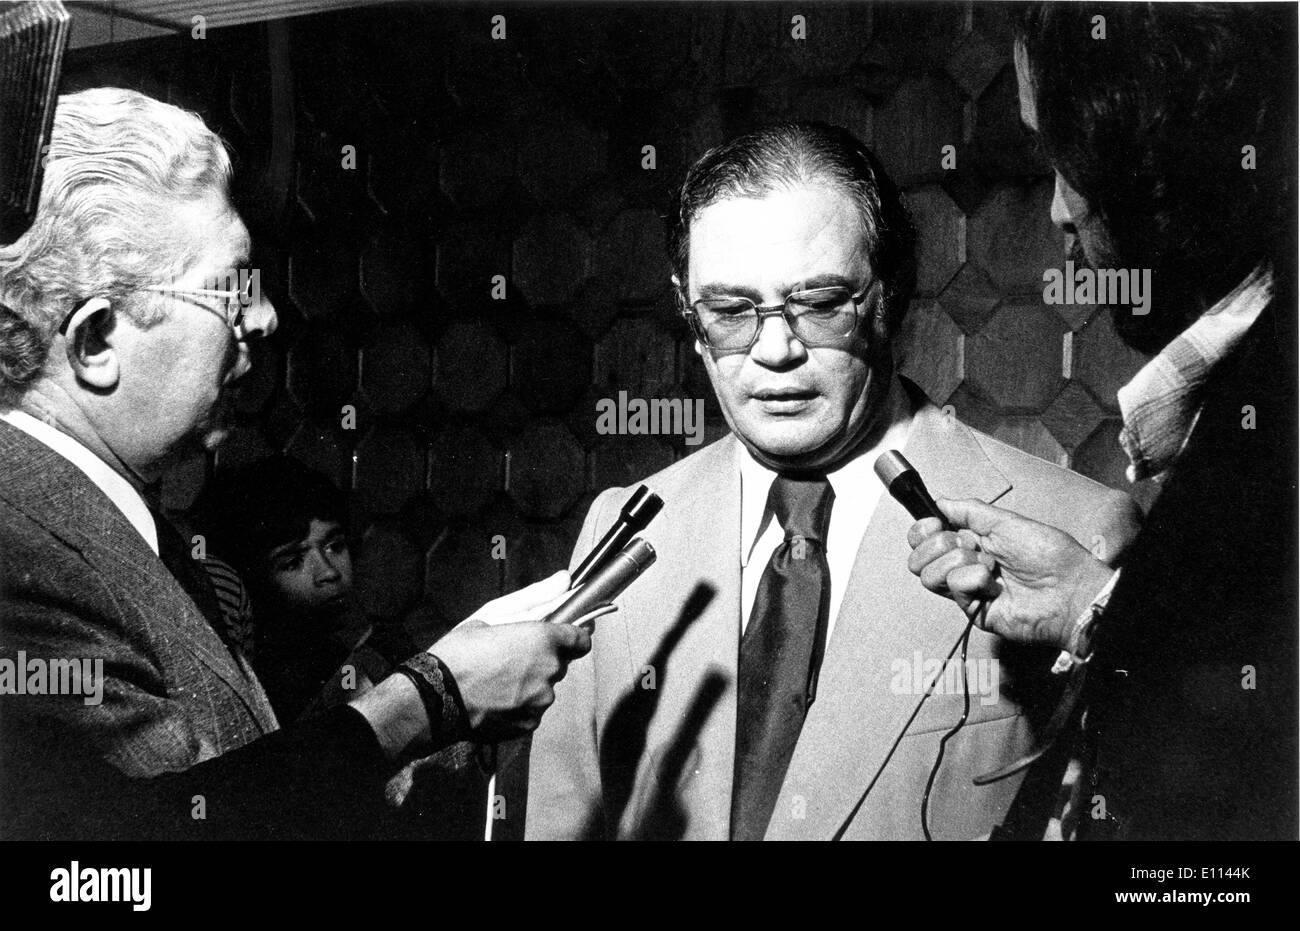 Oct 14, 1975; Lisbona, Portogallo; il ministro degli Affari esteri del Portogallo, principali MELO ANTUNES, durante un incontro con la stampa presso l'aeroporto prima di lasciare a Lussemburgo per la Comunità economica europea la conferenza. Foto Stock